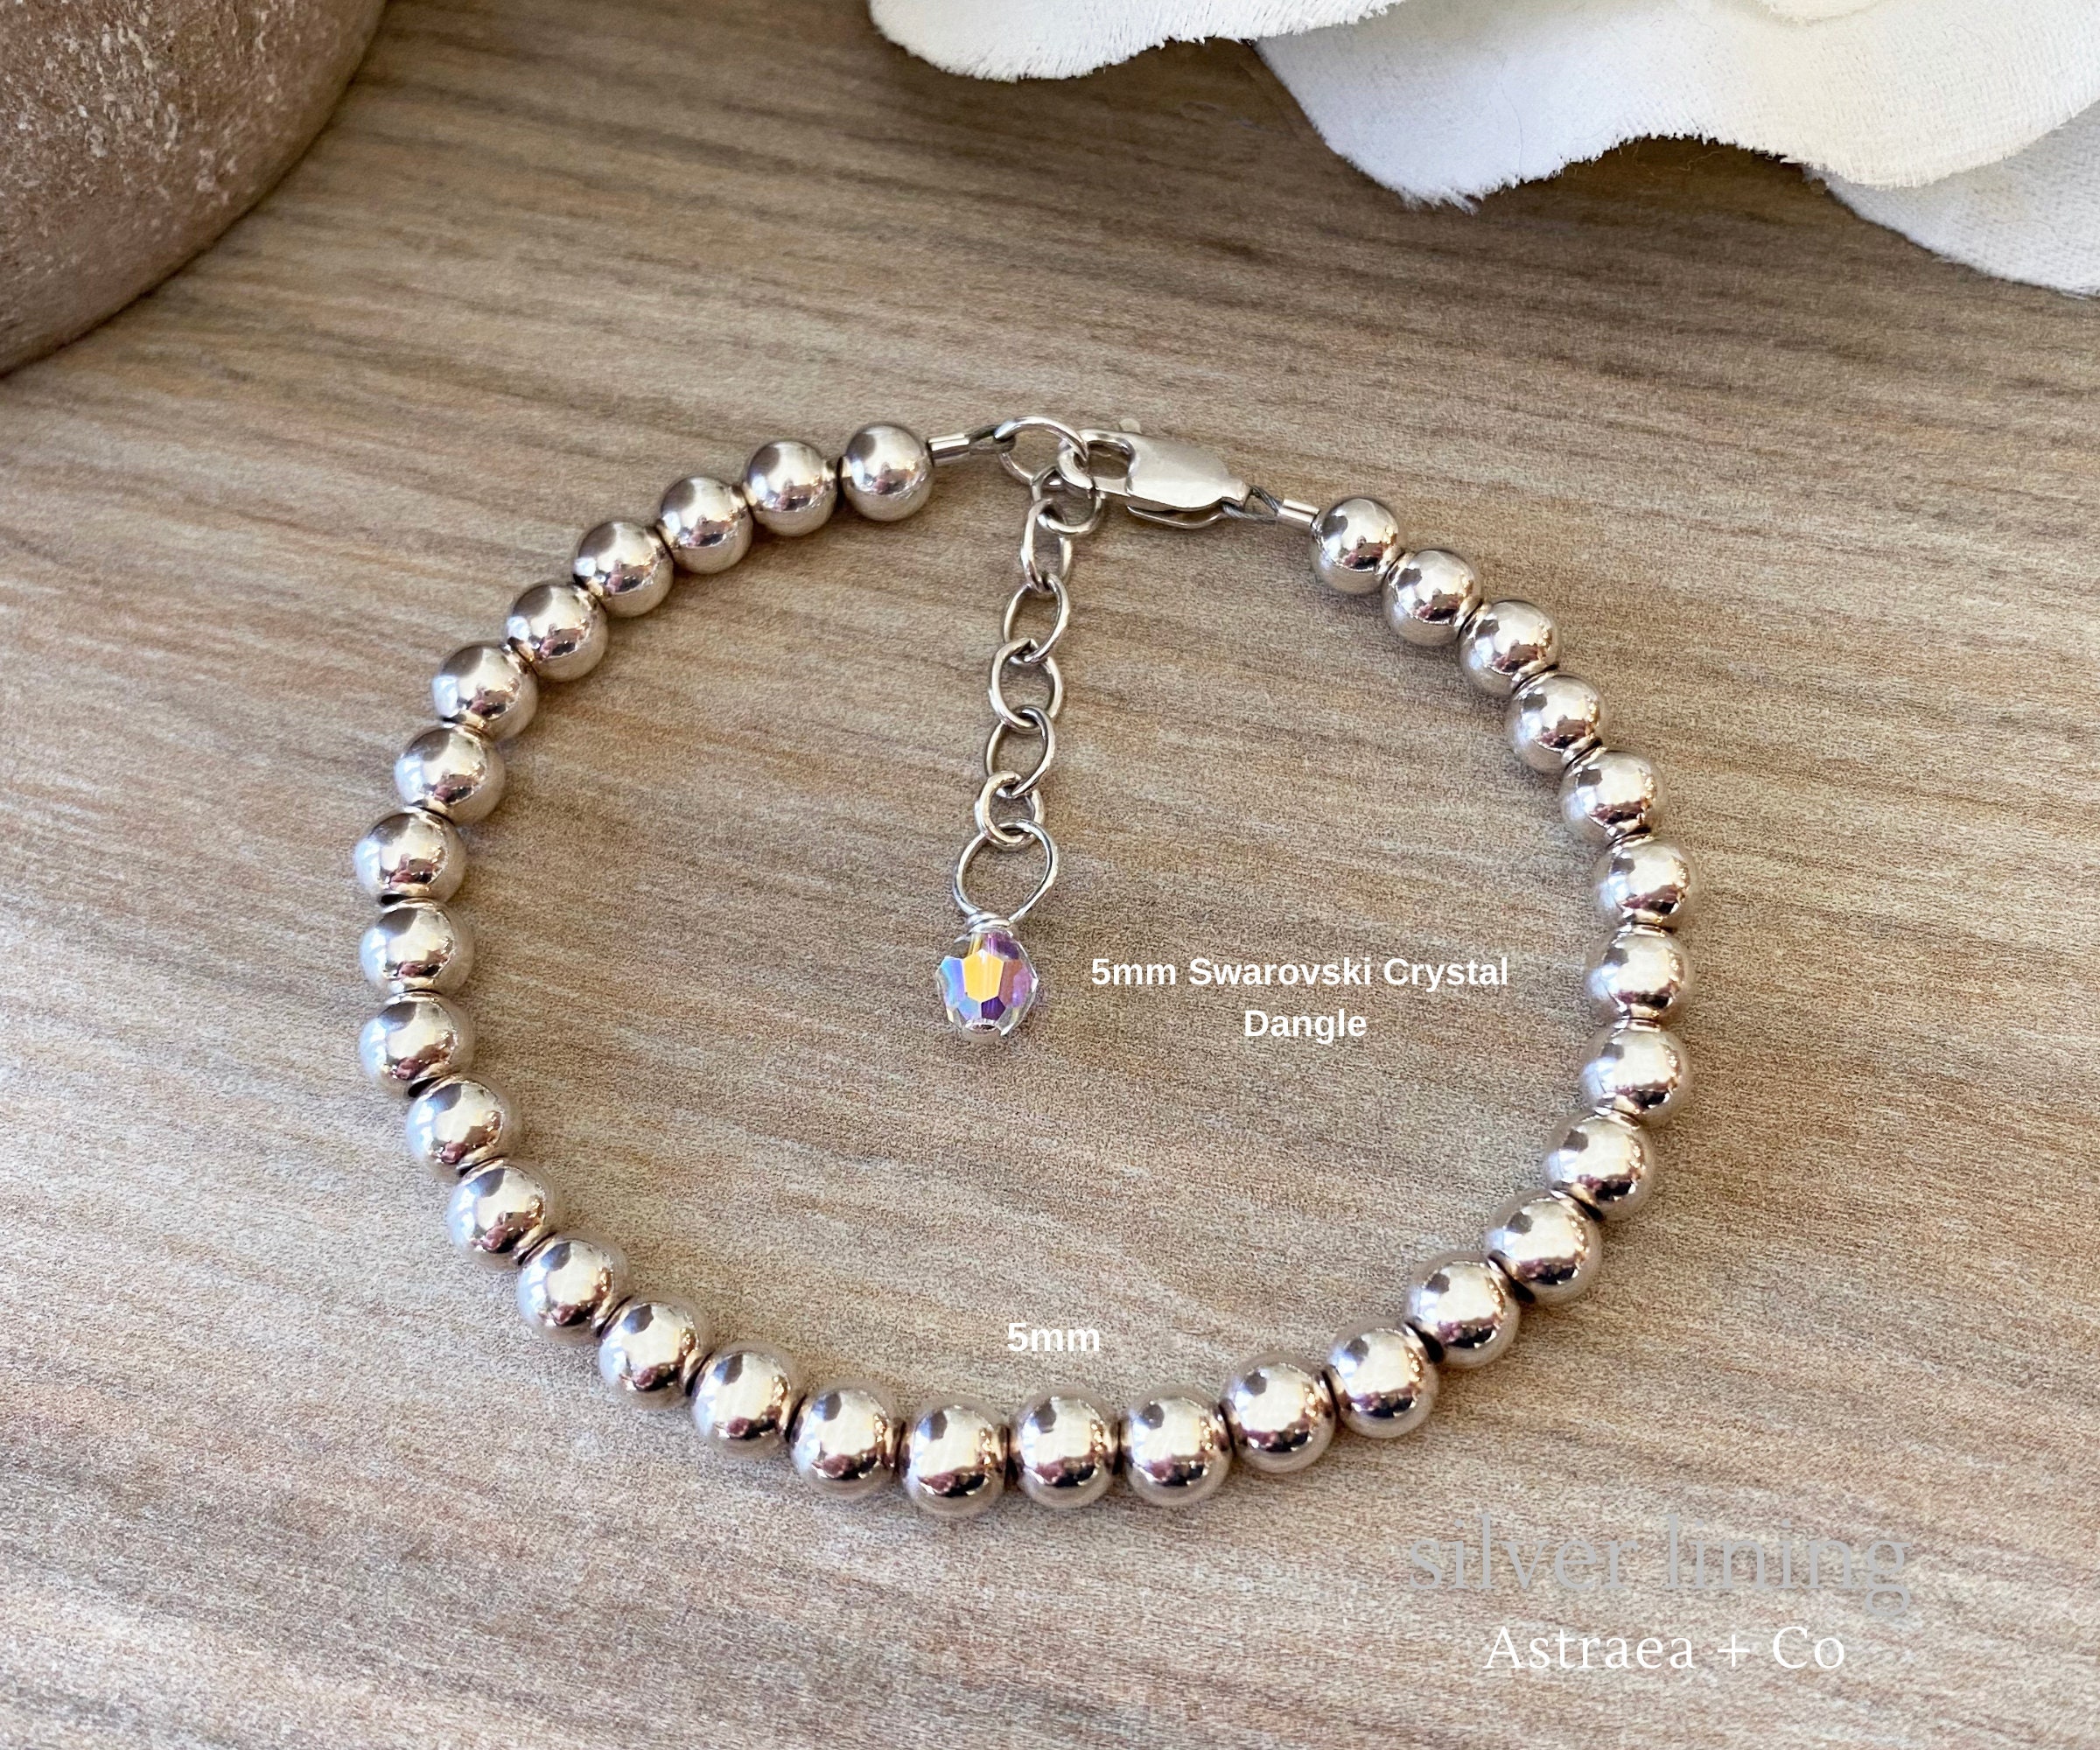 Combien de perles utiliser pour faire un bracelet ou un collier ? - Perles  & Co